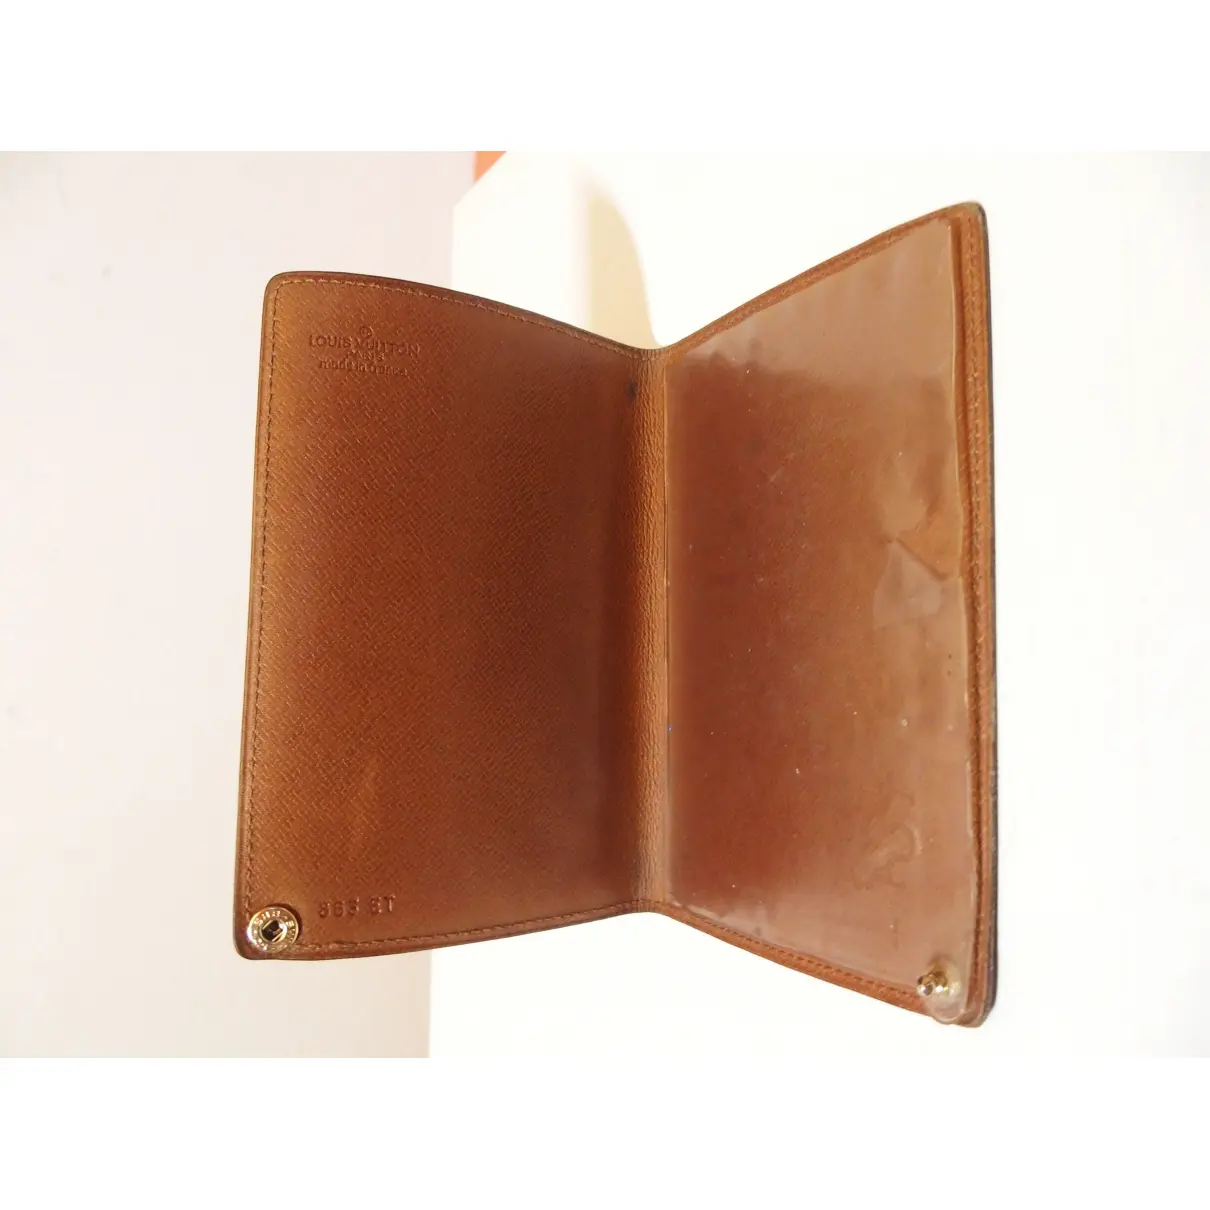 Couverture Passeport cloth card wallet Louis Vuitton - Vintage